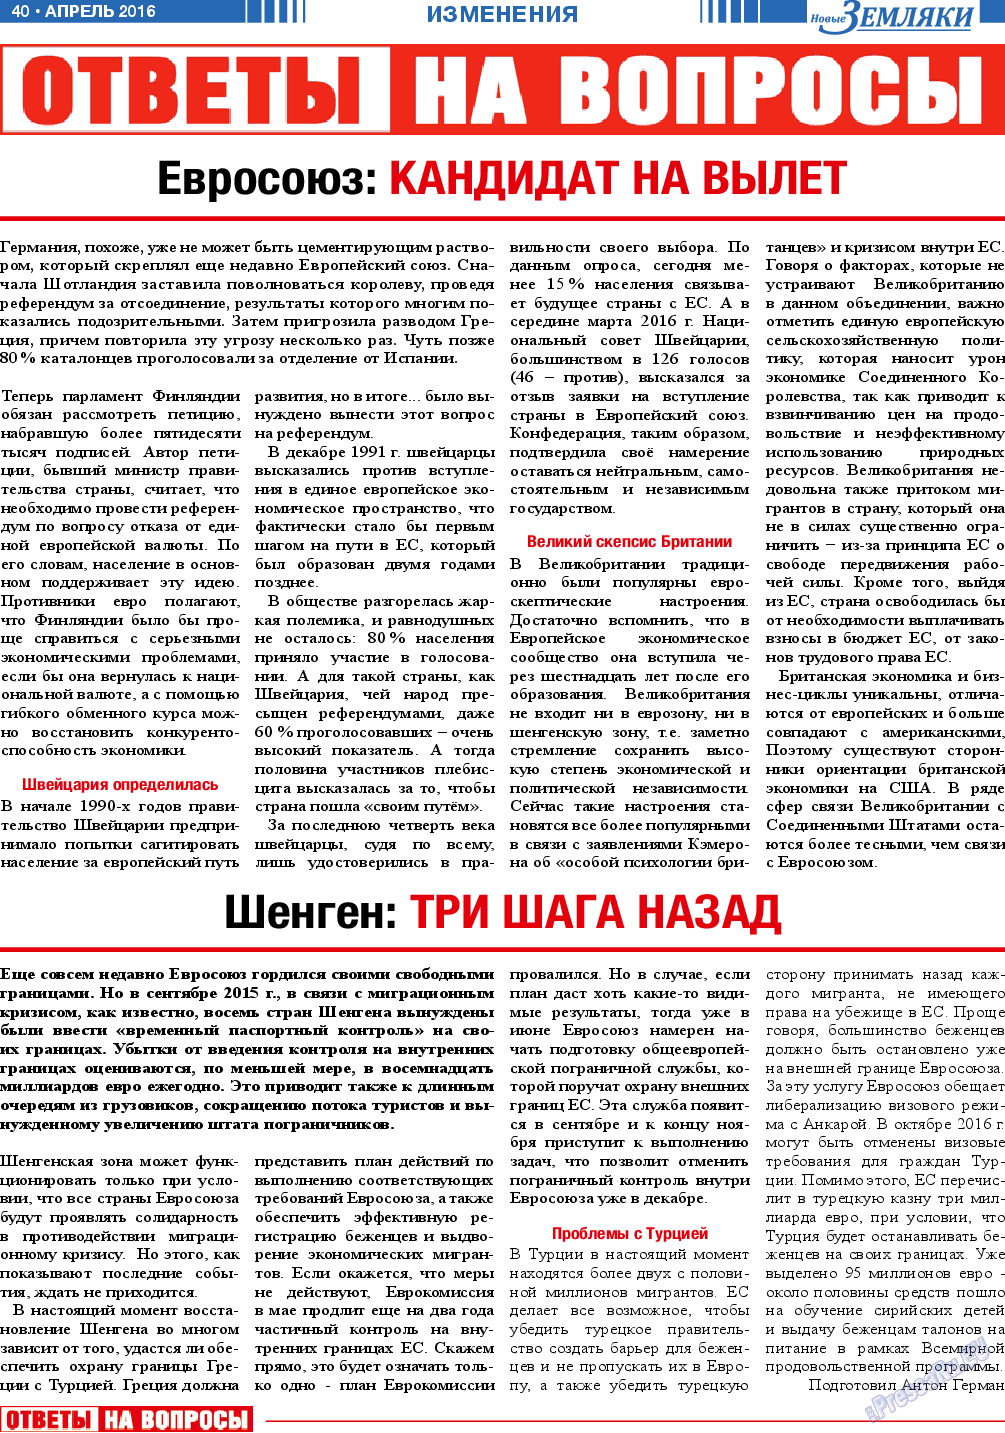 Новые Земляки, газета. 2016 №4 стр.40